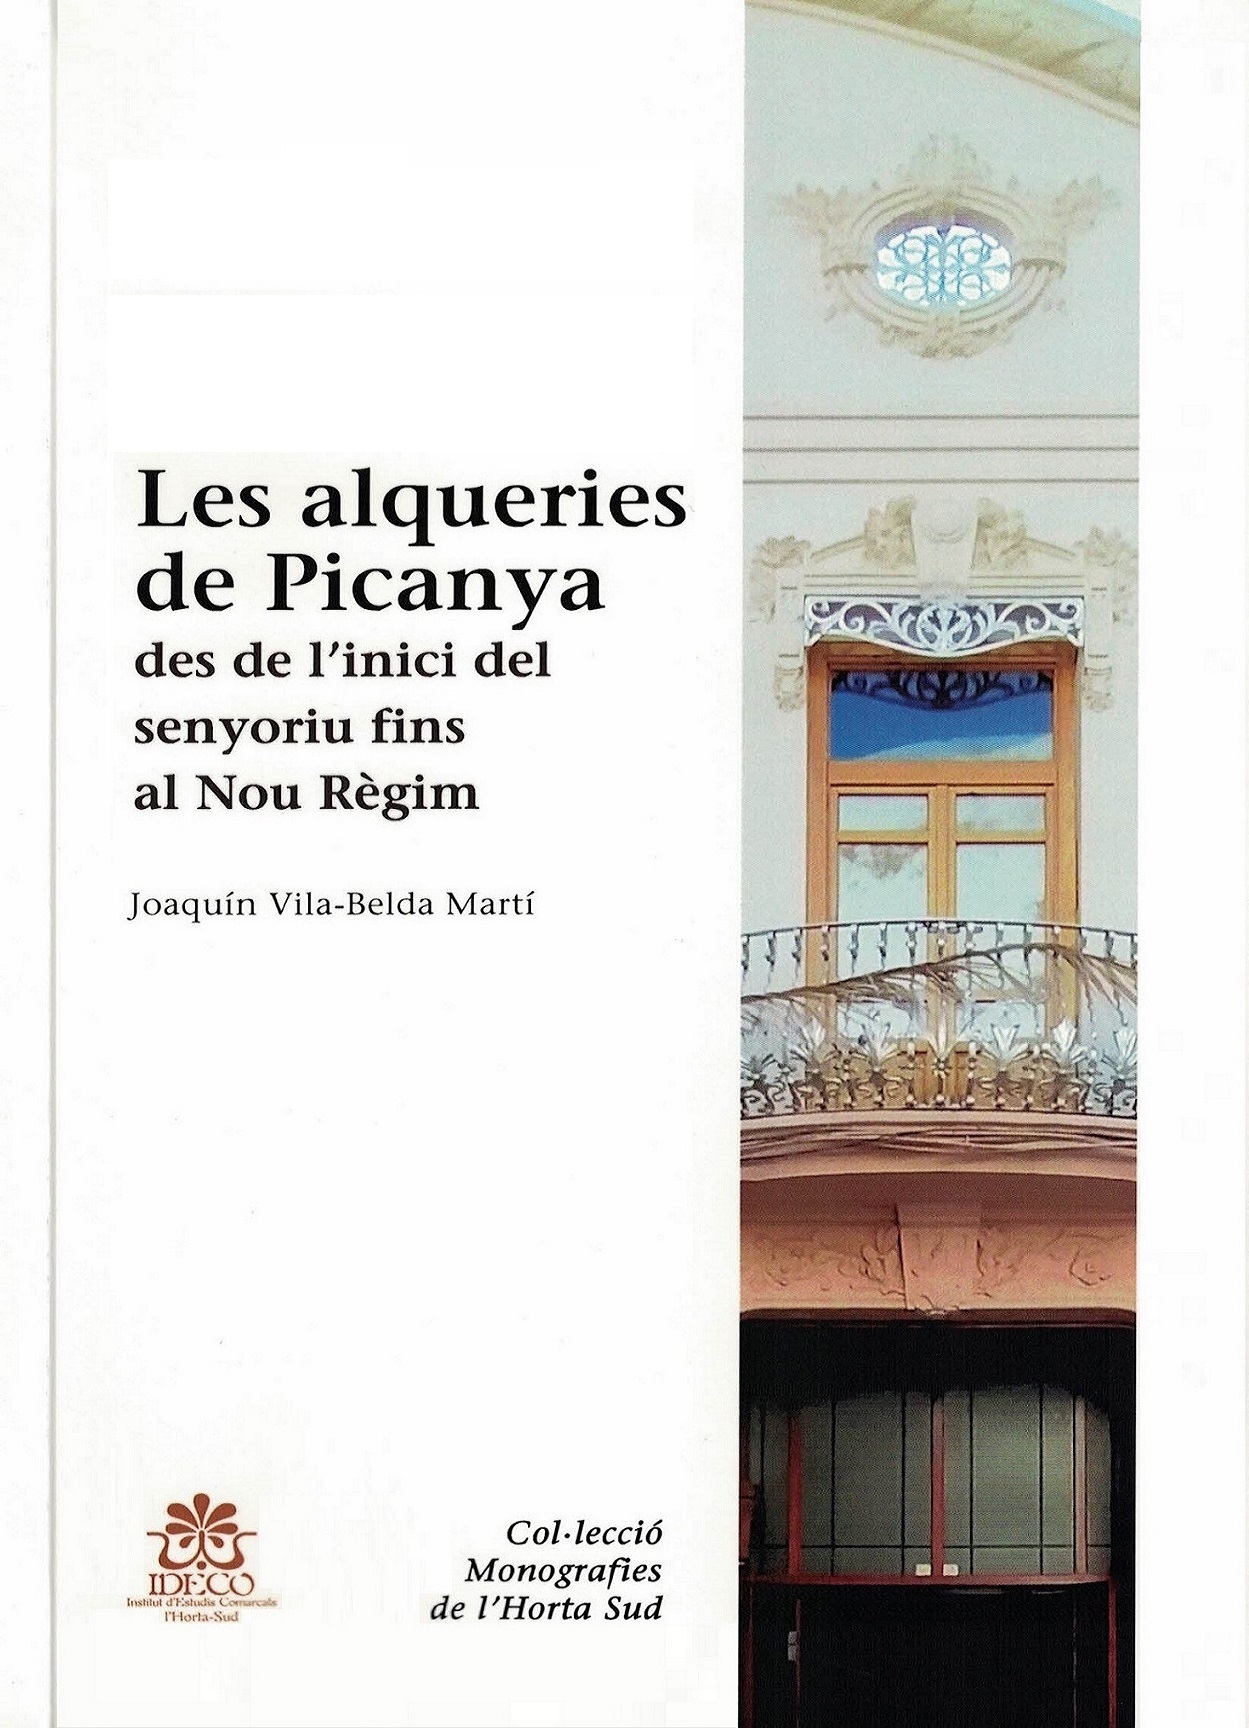 S'acaba d'editar el llibre 'Les alqueries de Picanya' de Joaquín Vila-Belda Martí, veí de Picanya